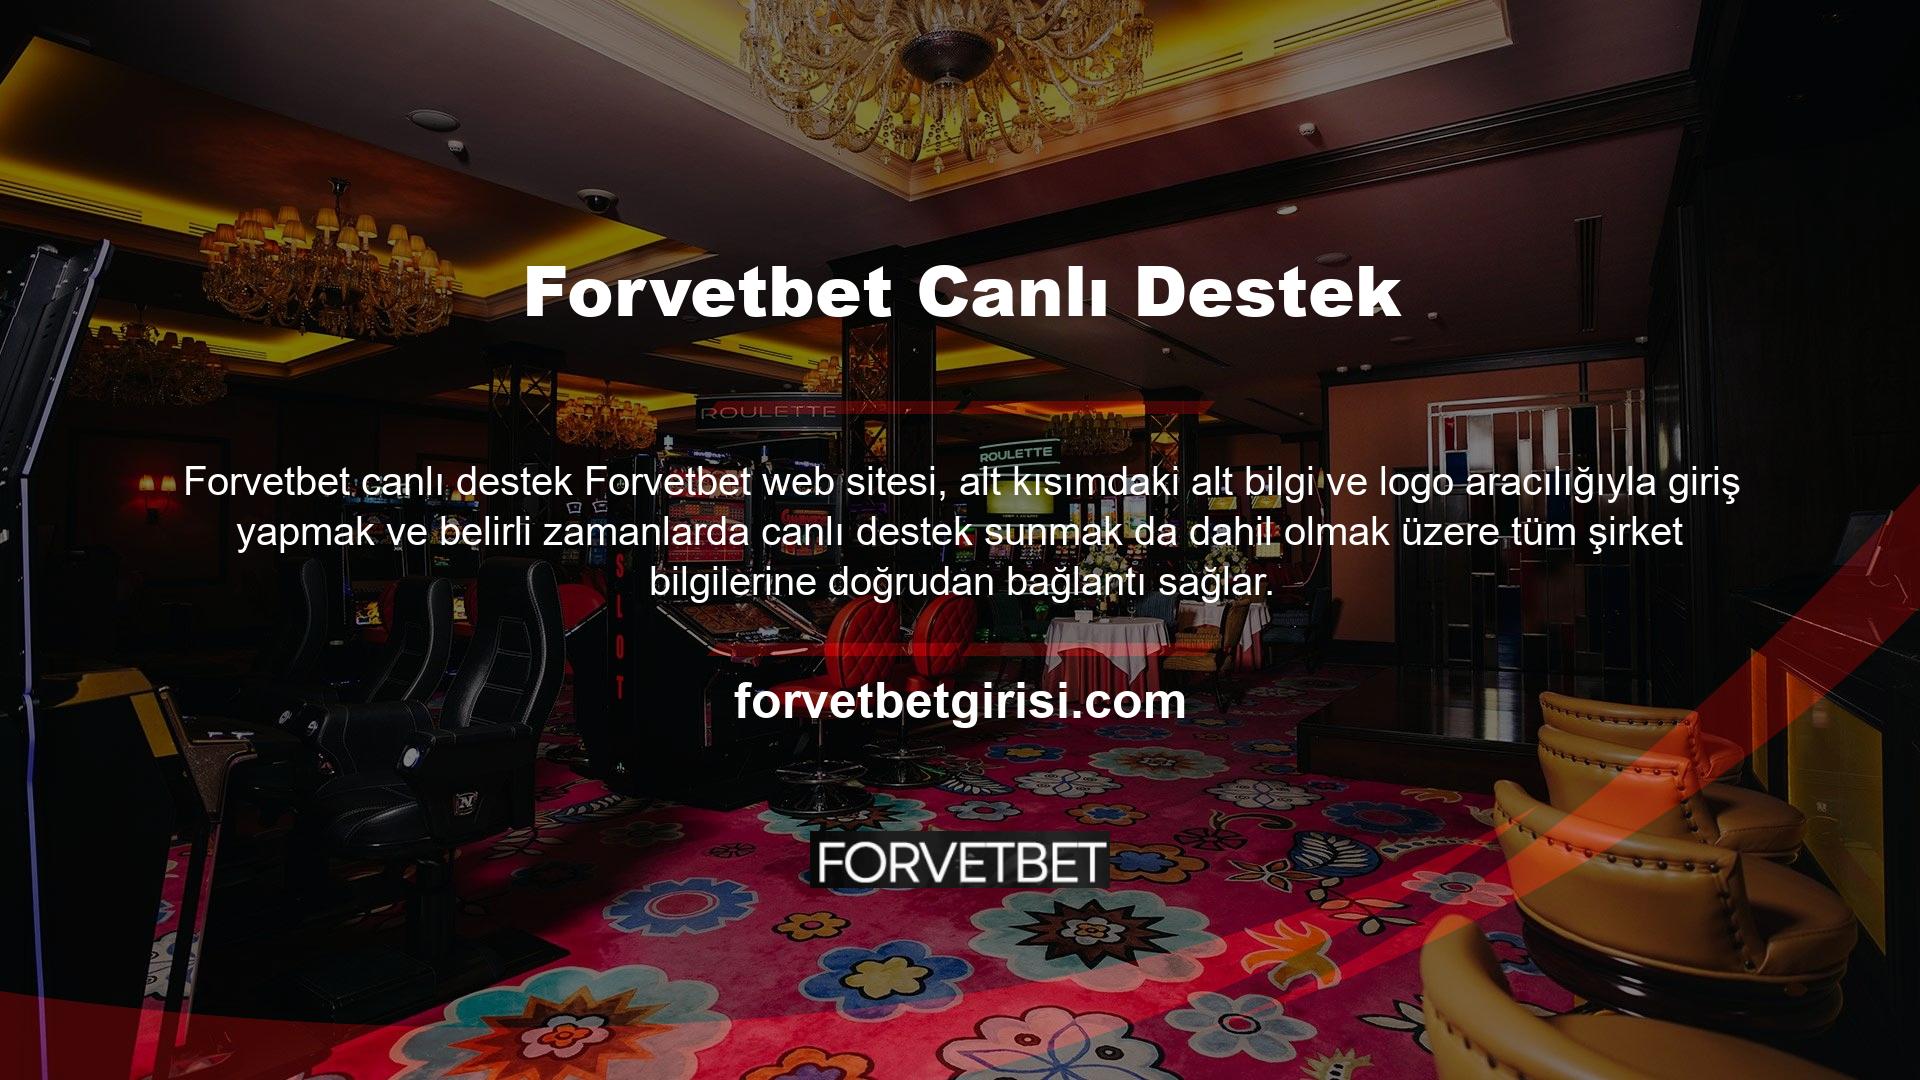 Not: Forvetbet web sitesinin yeni kullanıcı adı Forvetbet